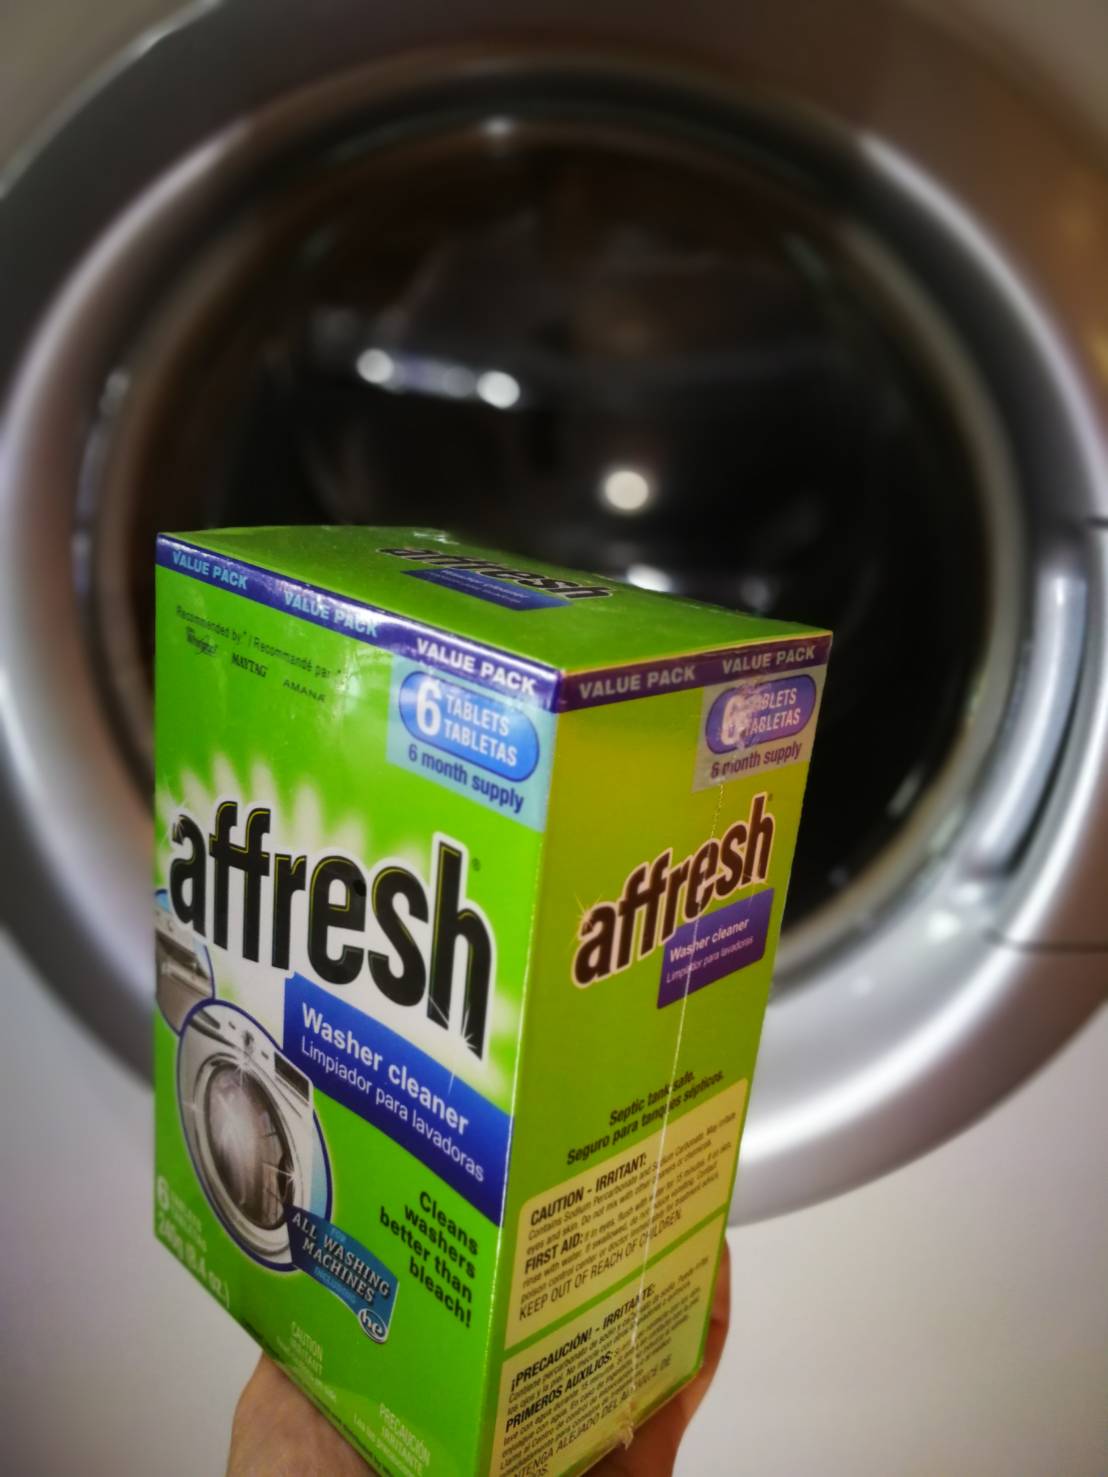 สินค้าพร้อมส่งจากเมืองไทย Affresh  ก้อนฟู่ ล้างเครื่องซักผ้า 1กล่องมี 6 ก้อน  Washing Machine Cleaner